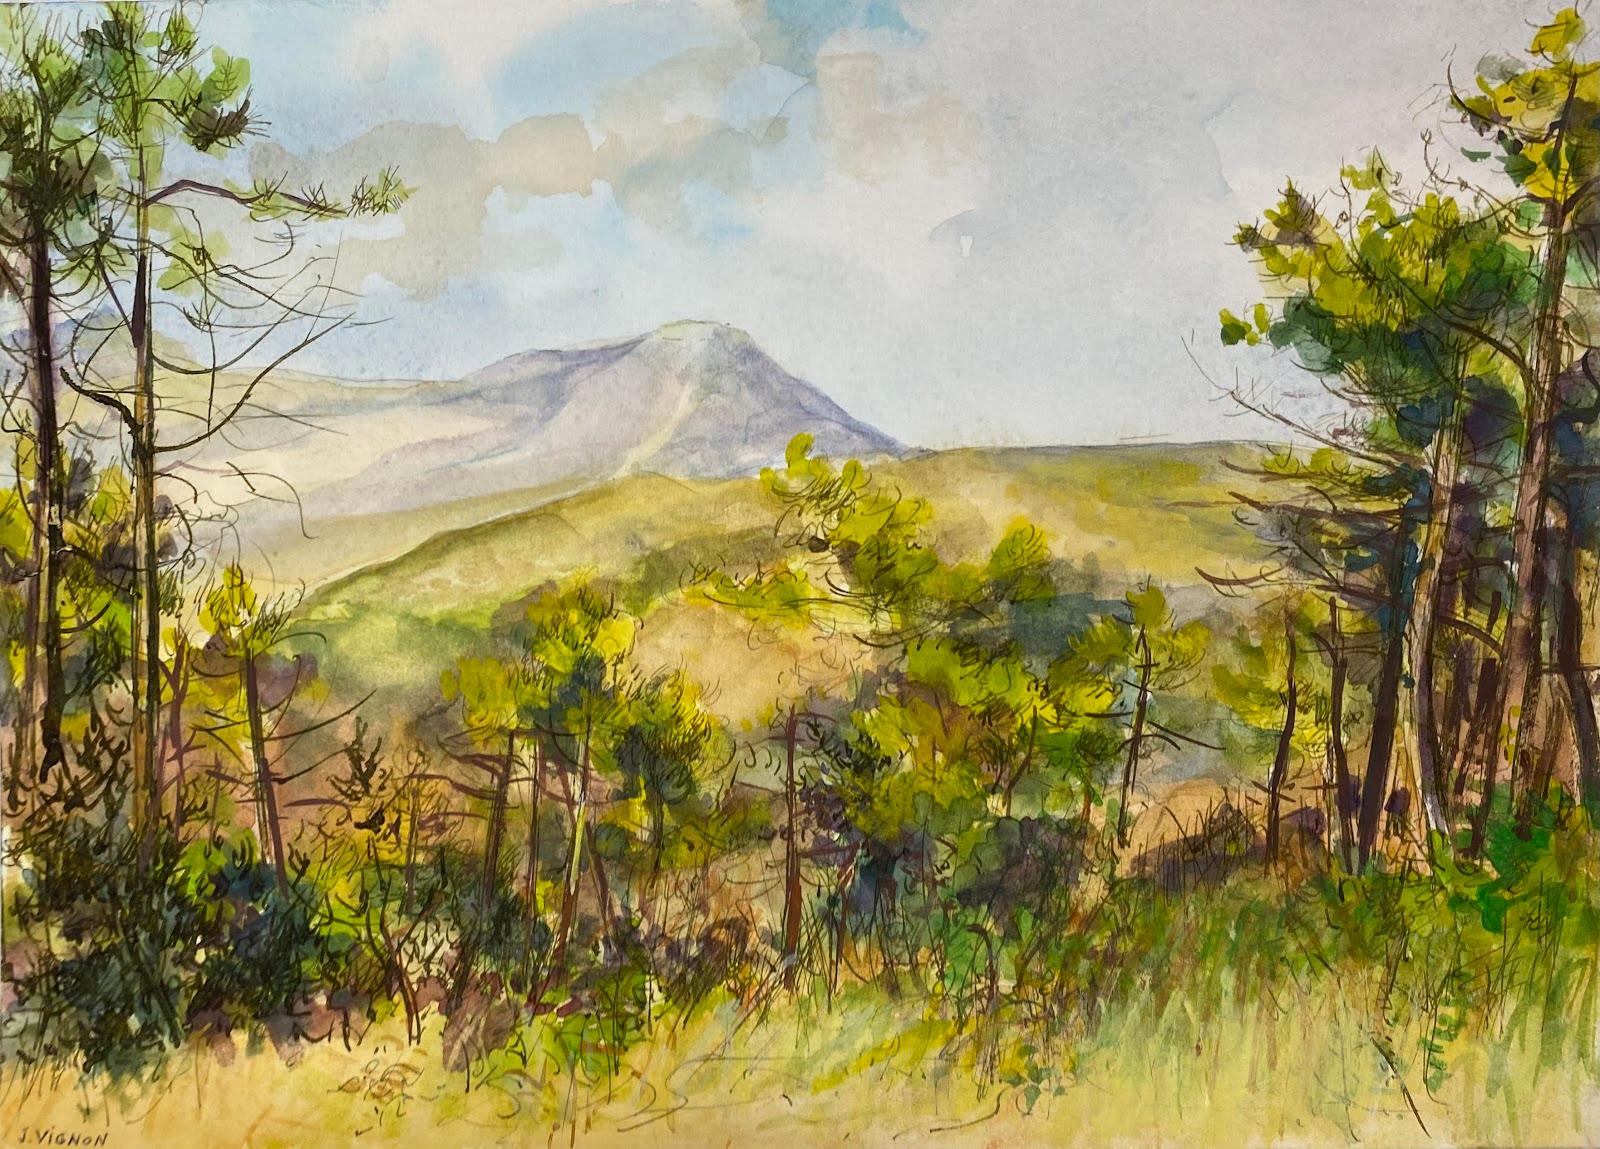 Josine Vignon Landscape Art – Postimpressionistische französische Aquarellmalerei Laub und Bäume Berglandschaft